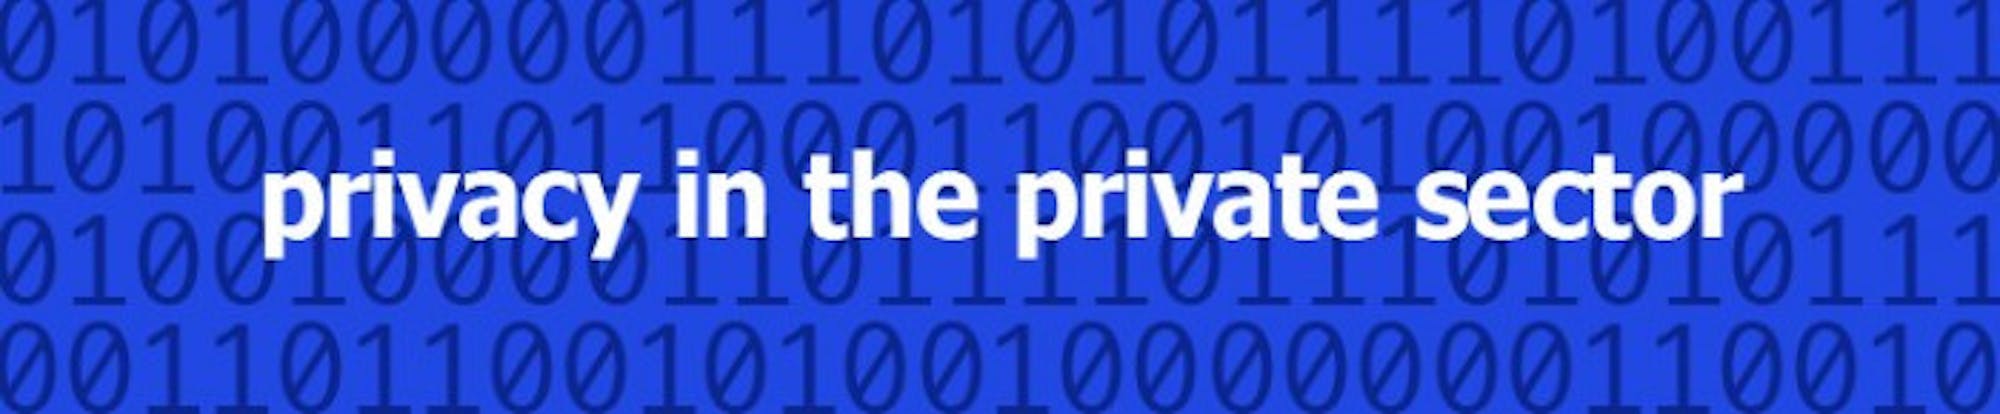 web_privacy